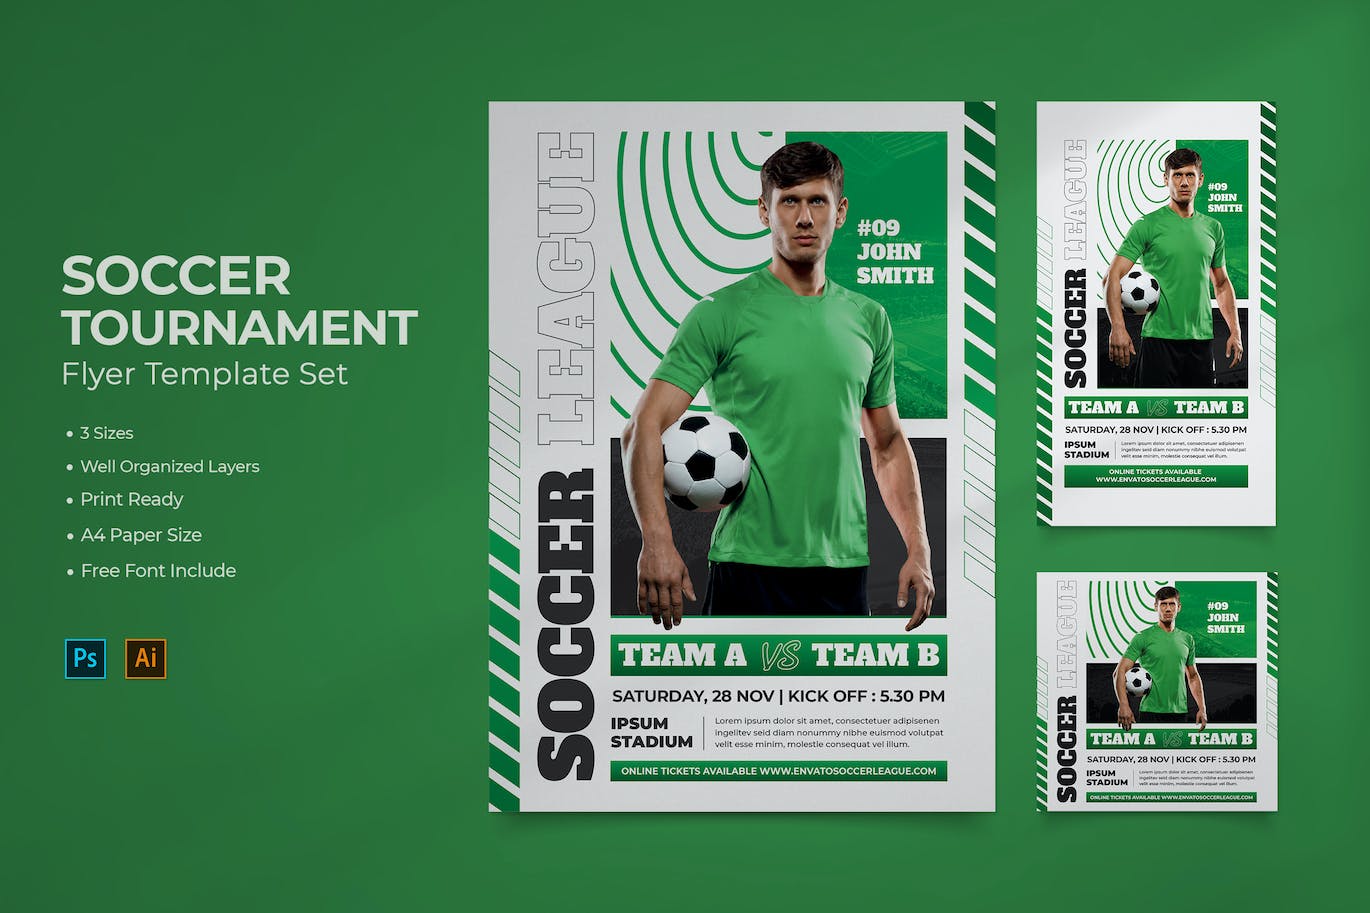 足球锦标赛海报设计 Soccer Tournament Flyer 设计素材 第1张